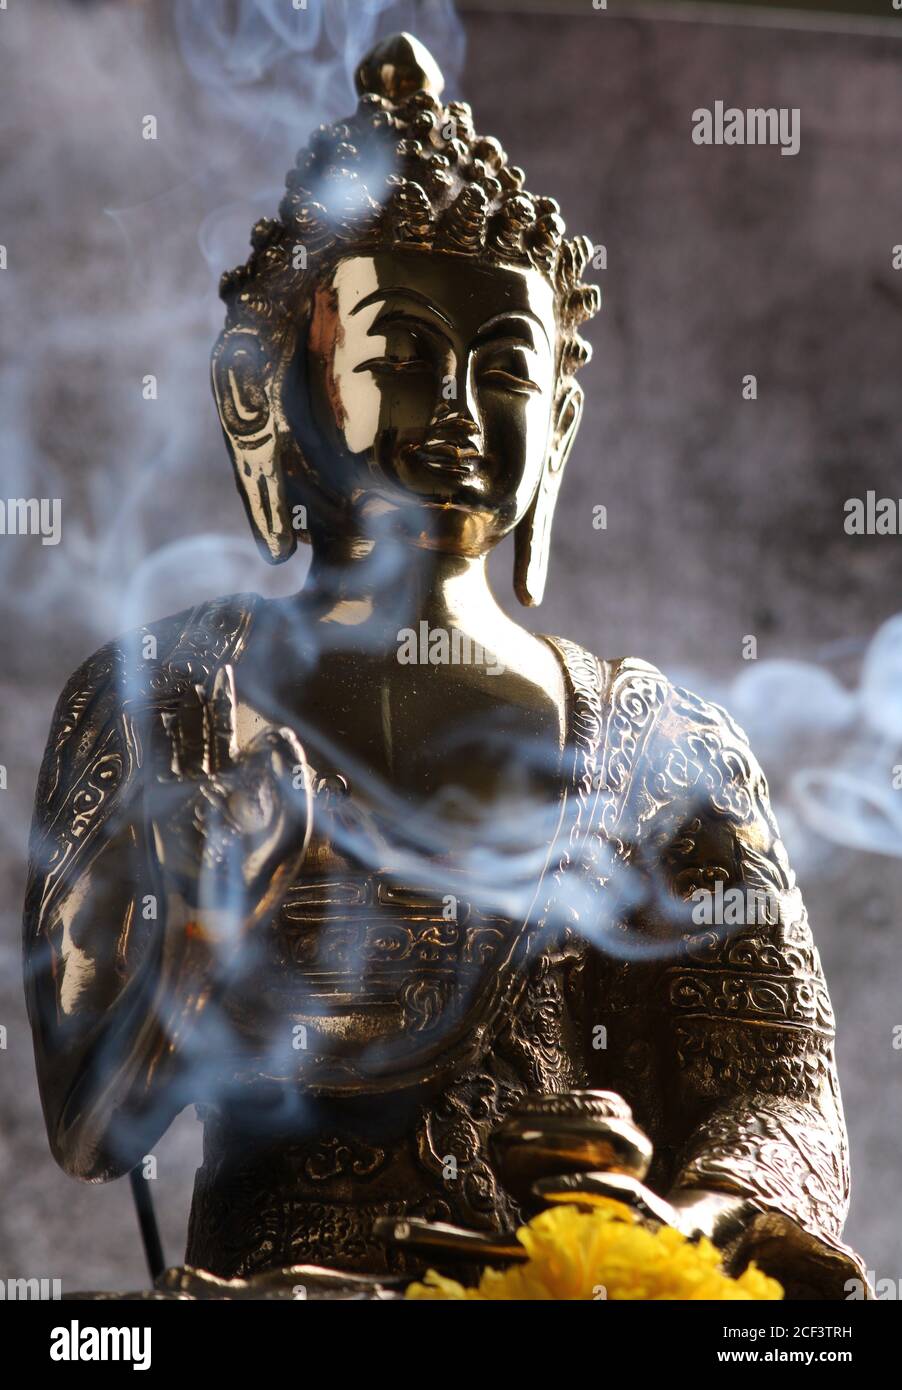 Sculpture en laiton du Bouddha Gautam. Sur fond gris Banque D'Images